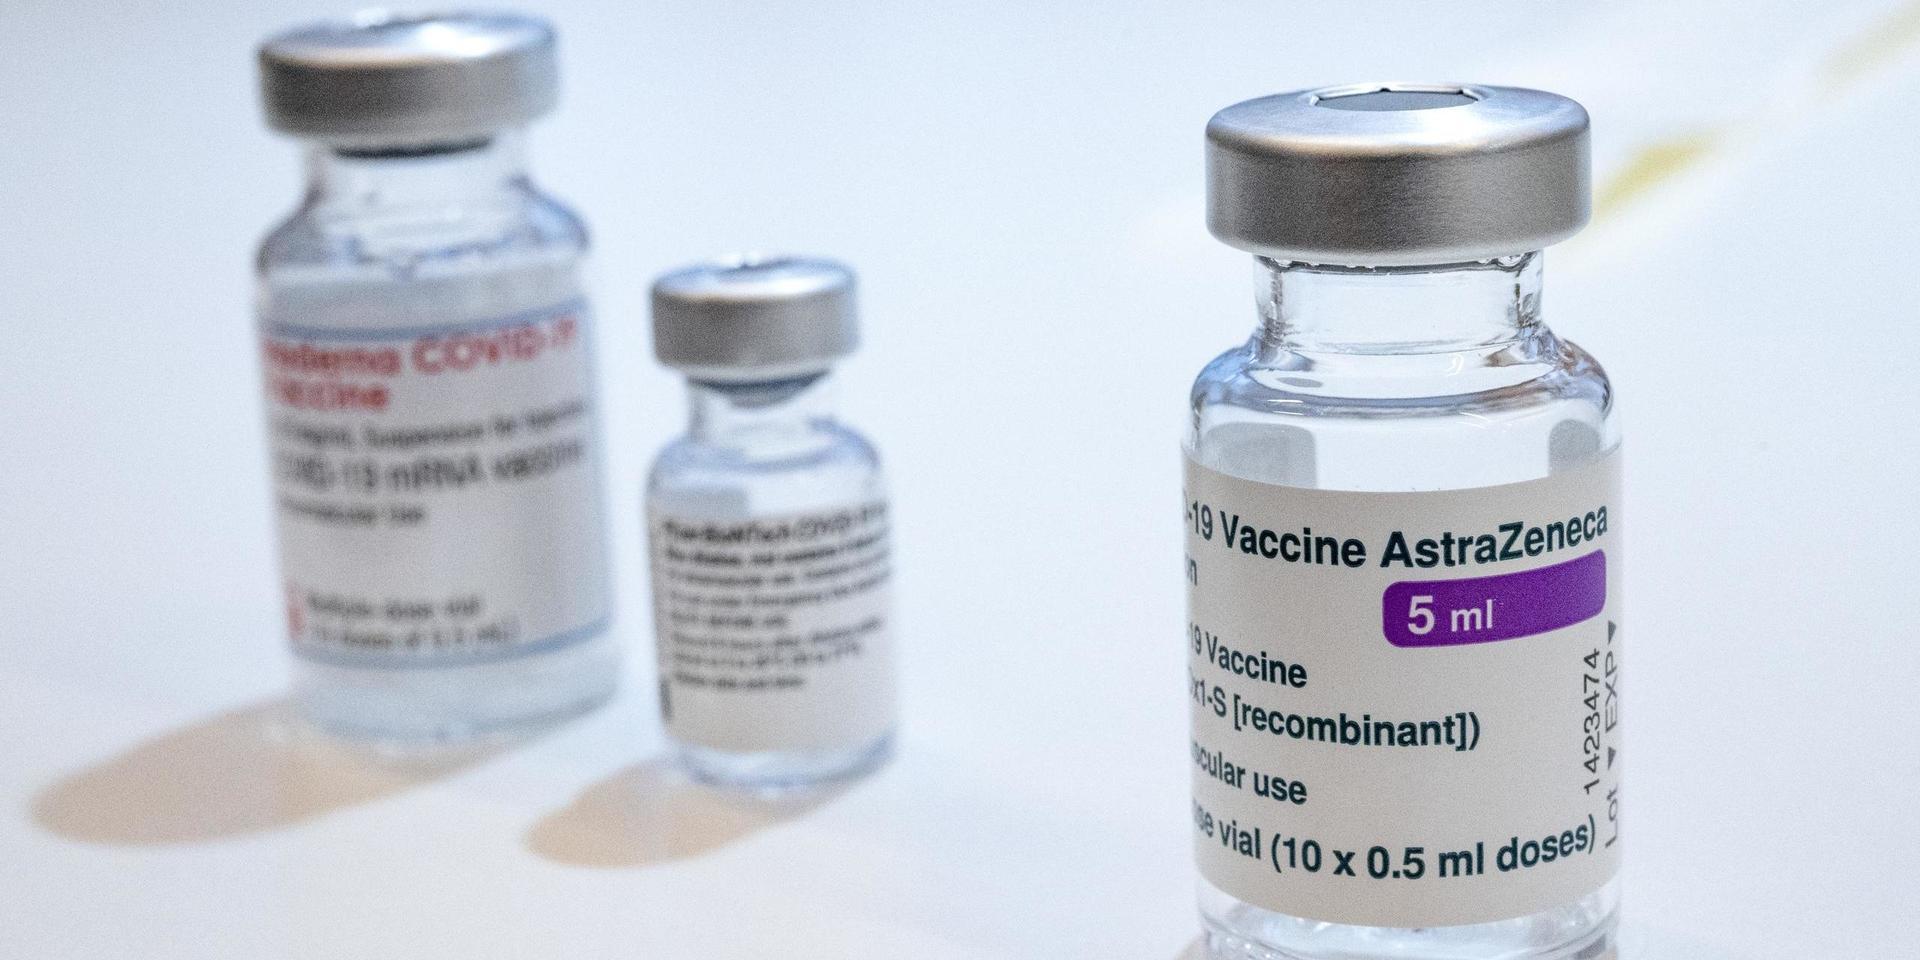 Sverige har inte valt att pausa vaccineringen med Astra Zenecas vaccin till skillnad från Norge och Danmark.